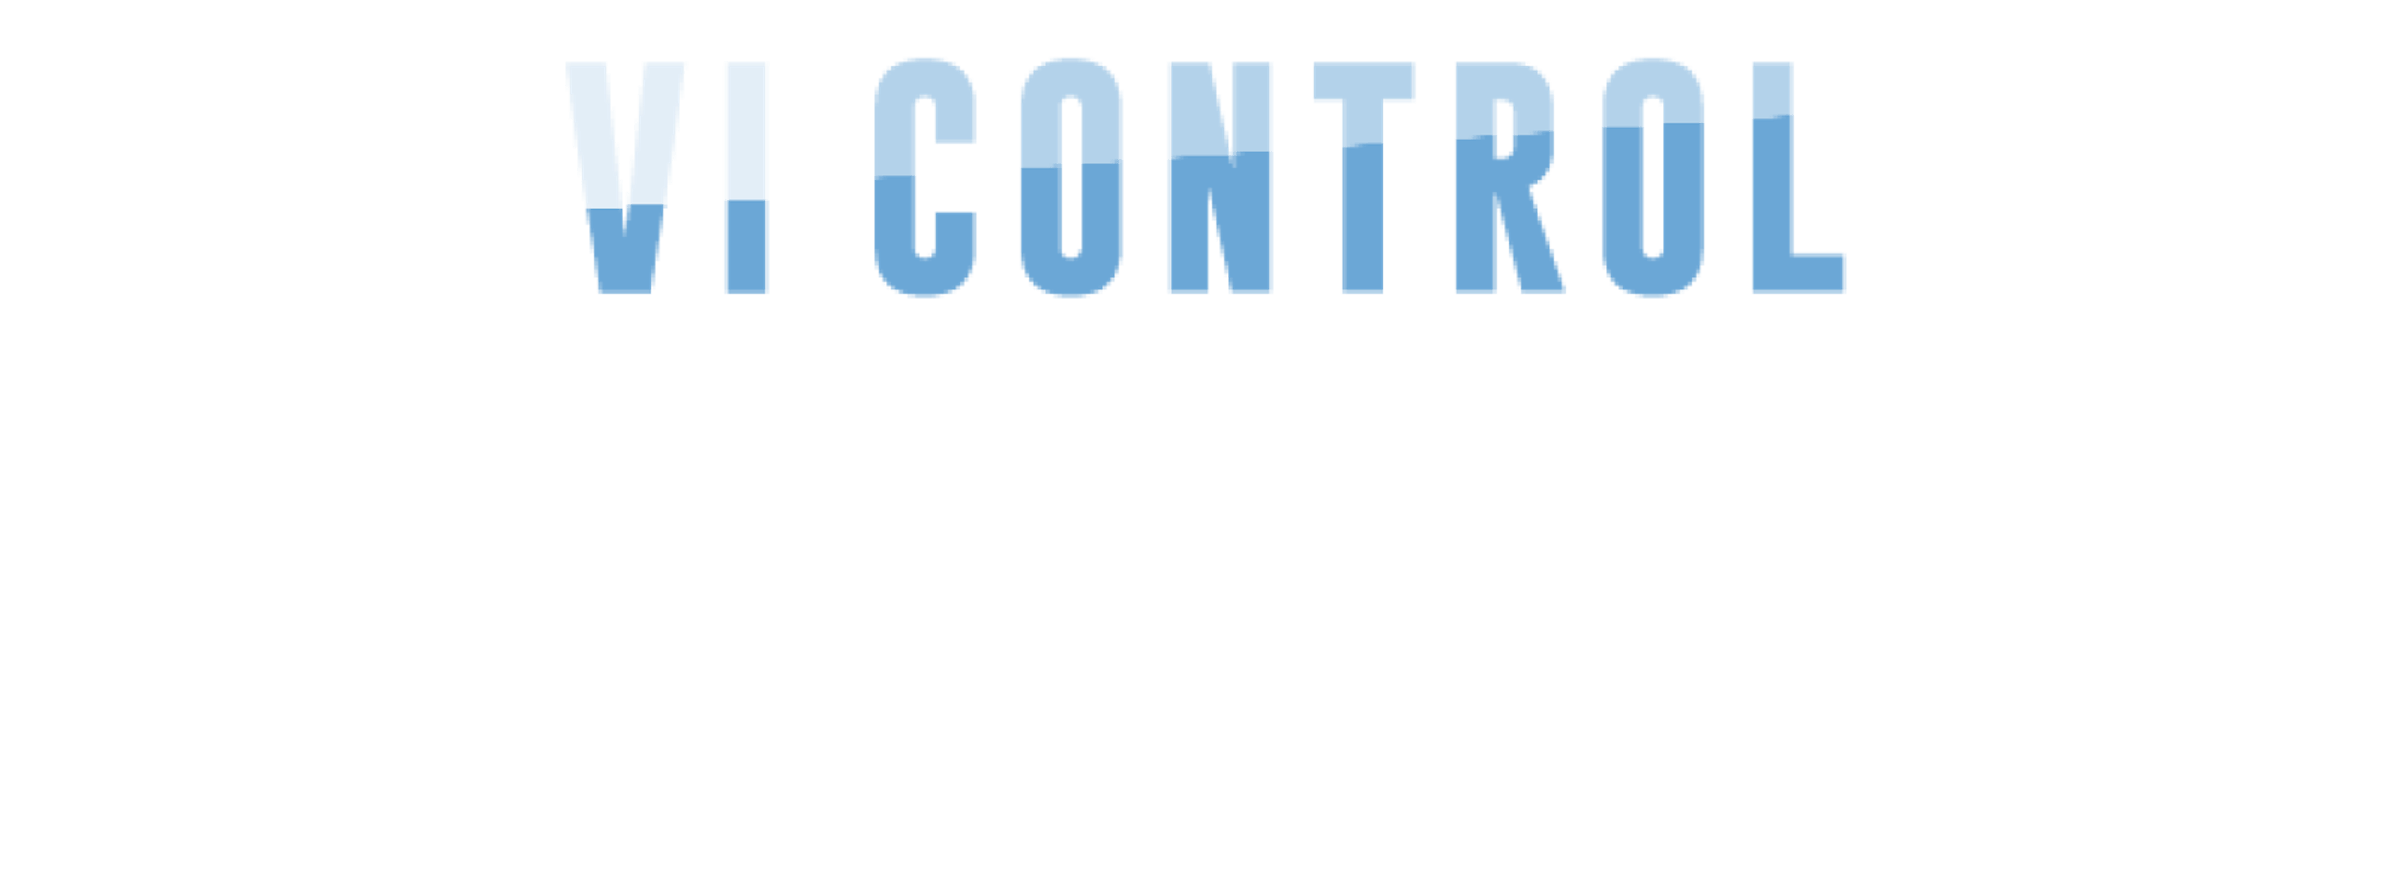 VI Control logo